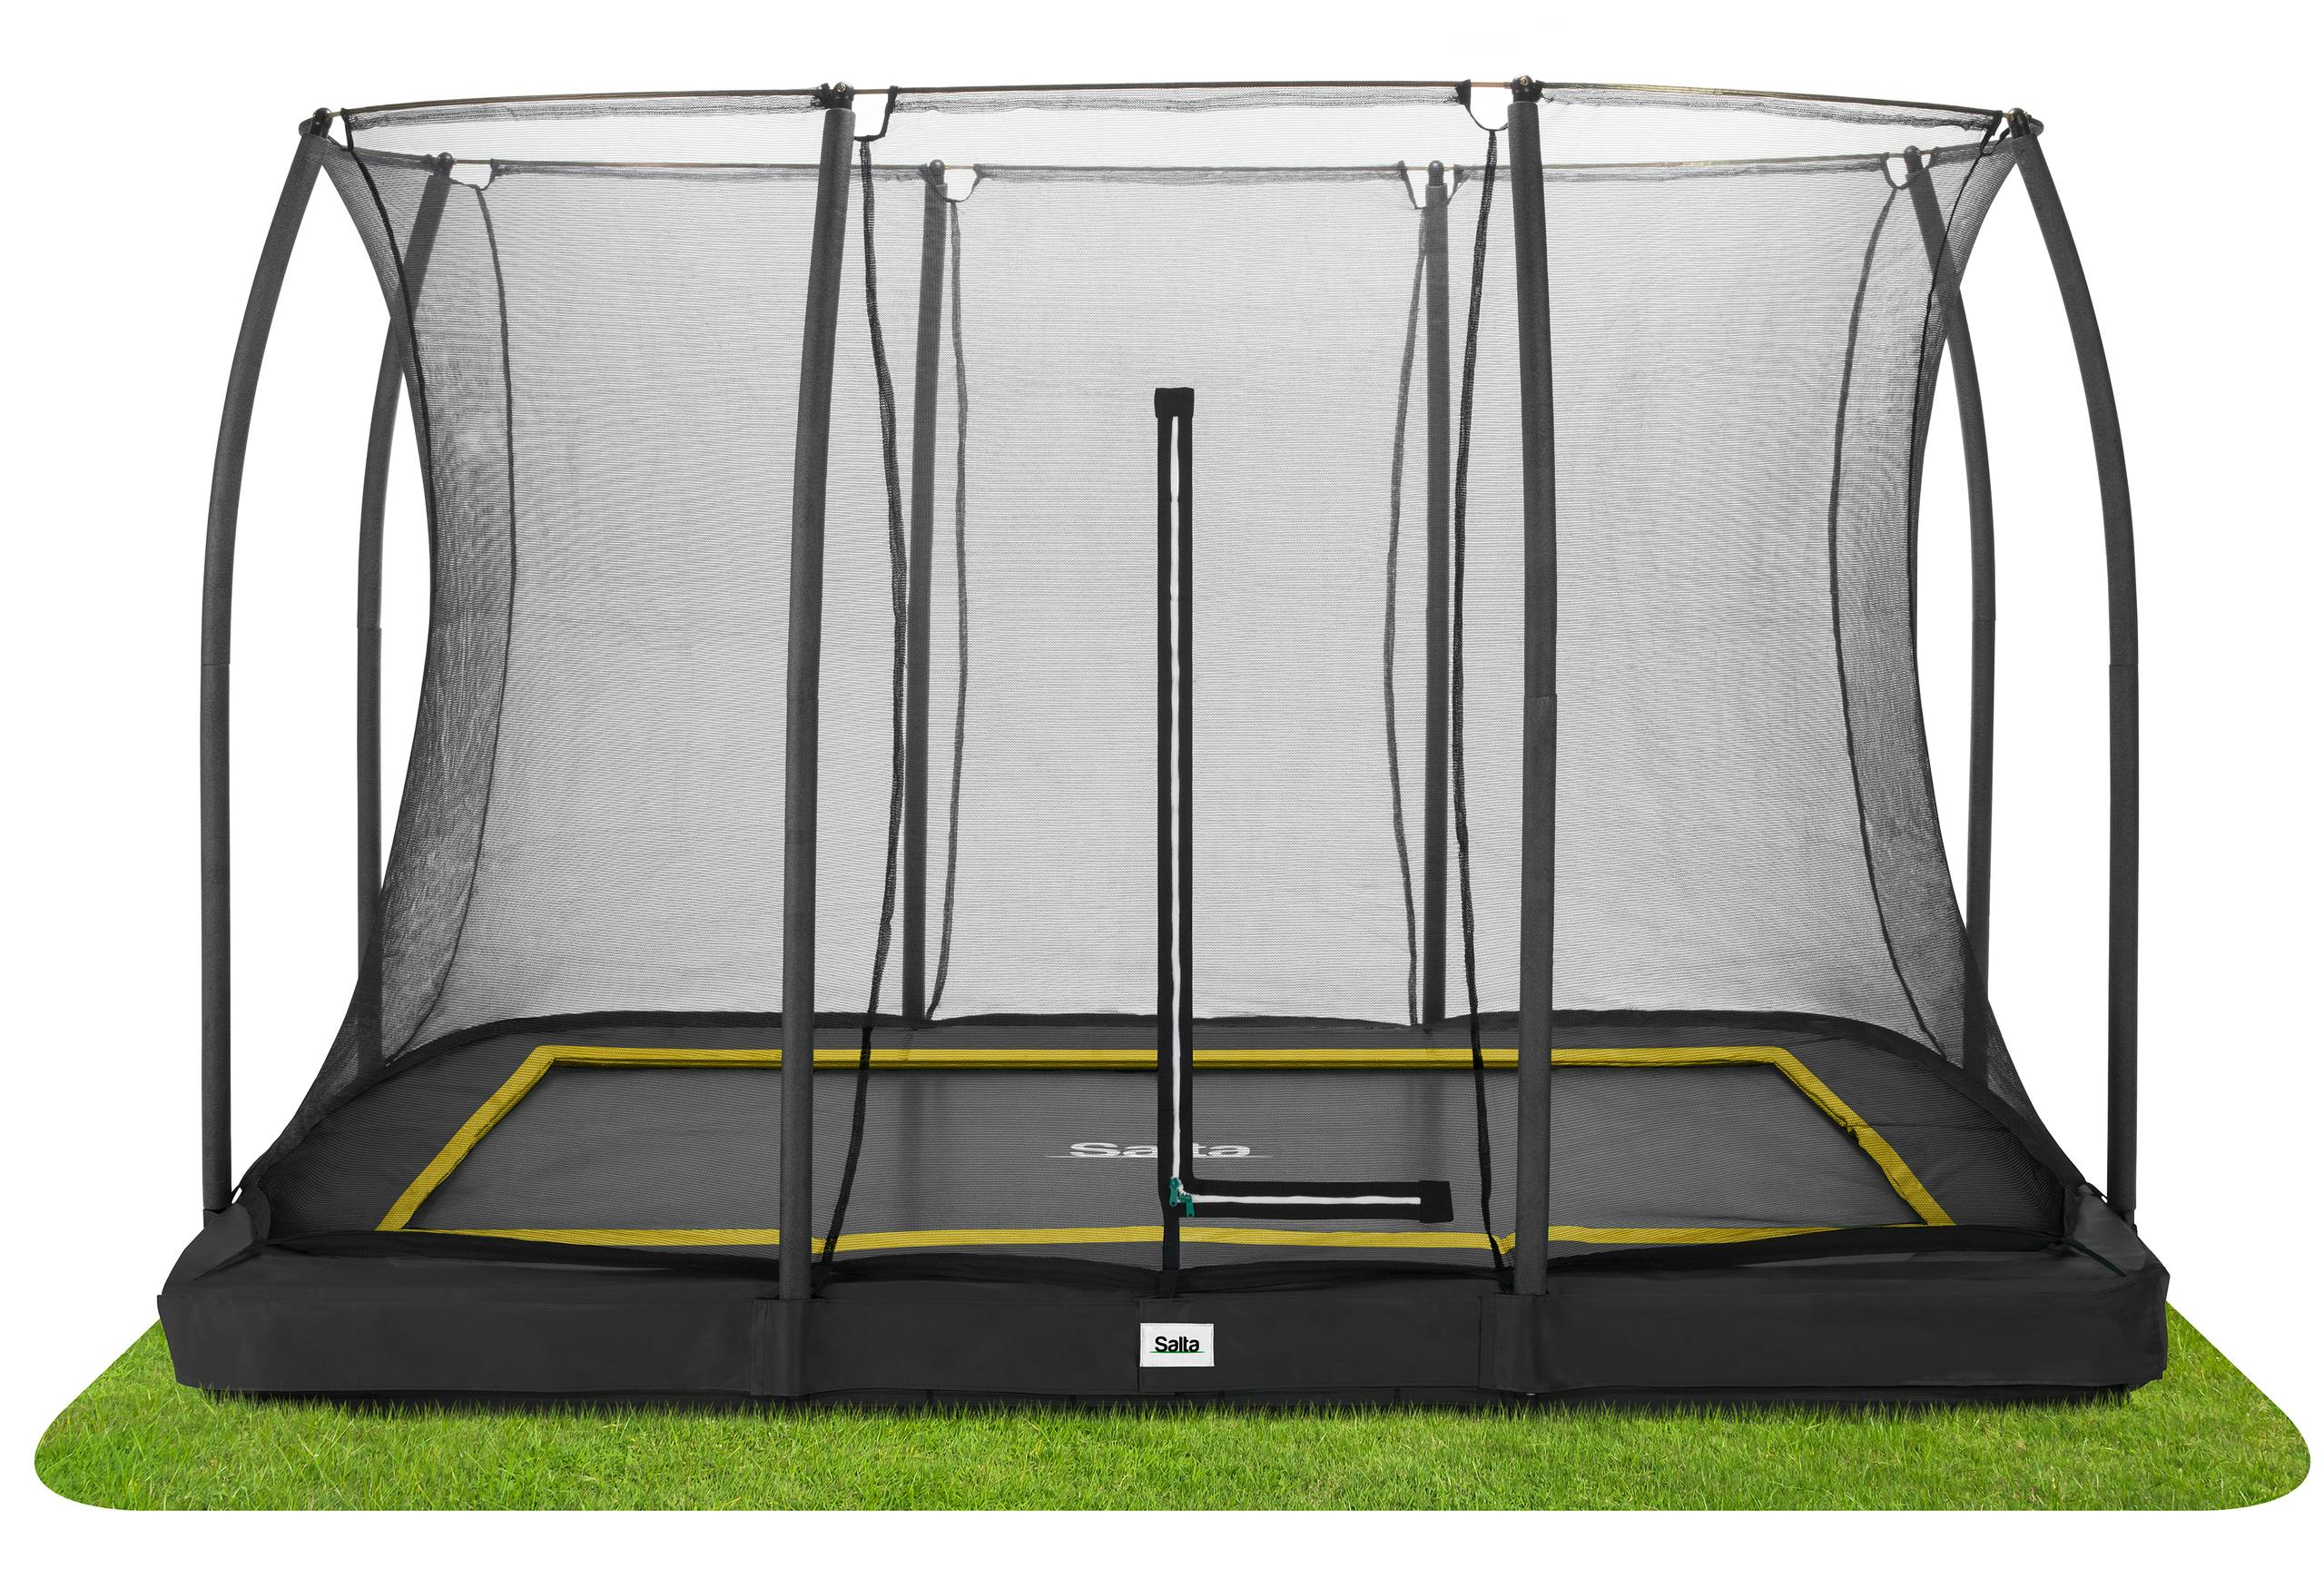 Naar Geschatte salta comfort edition rechthoekige trampoline overzee Gezamenlijk